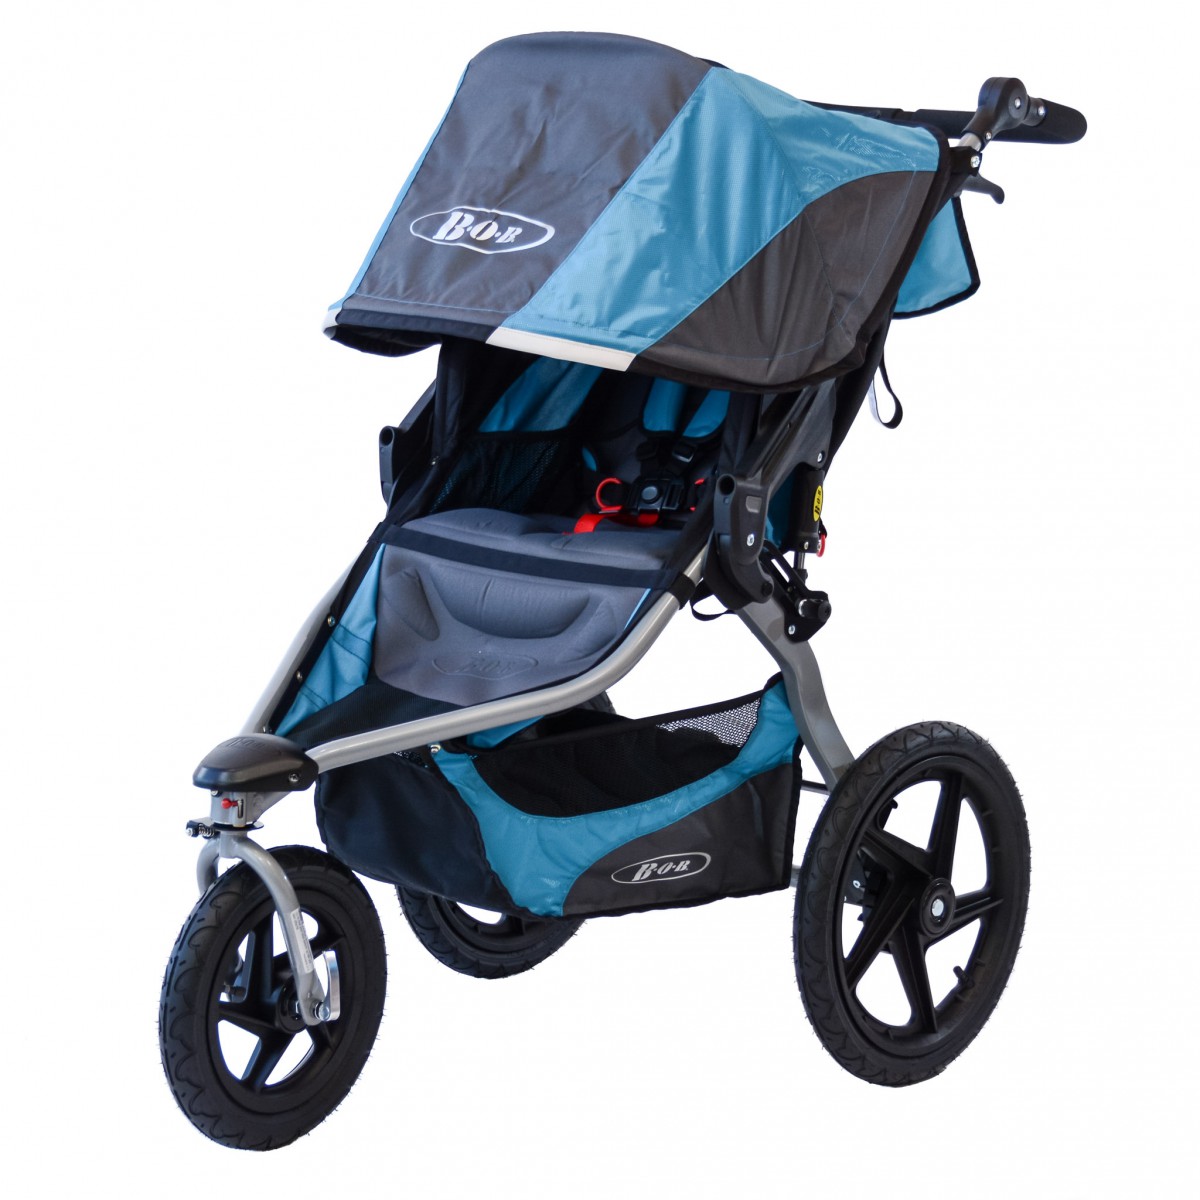 bob revolution flex 2.0 full size stroller review